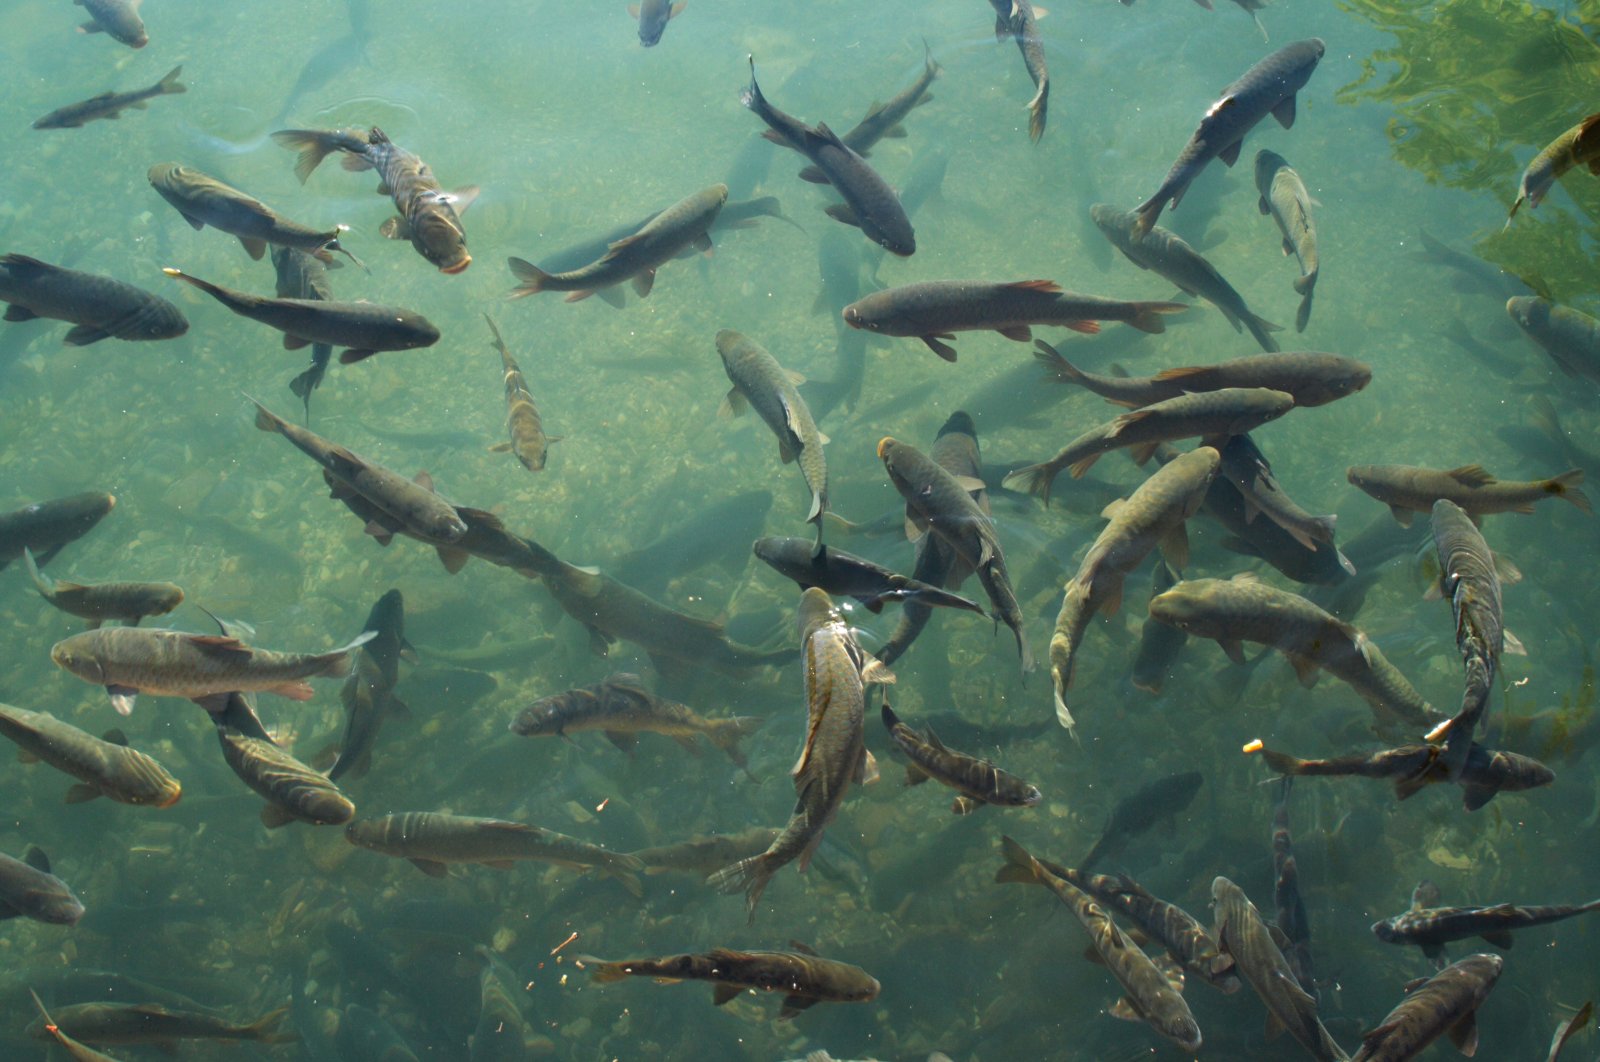 Hampir 1 juta ikan mas dilepaskan di danau Istanbul untuk nelayan lokal